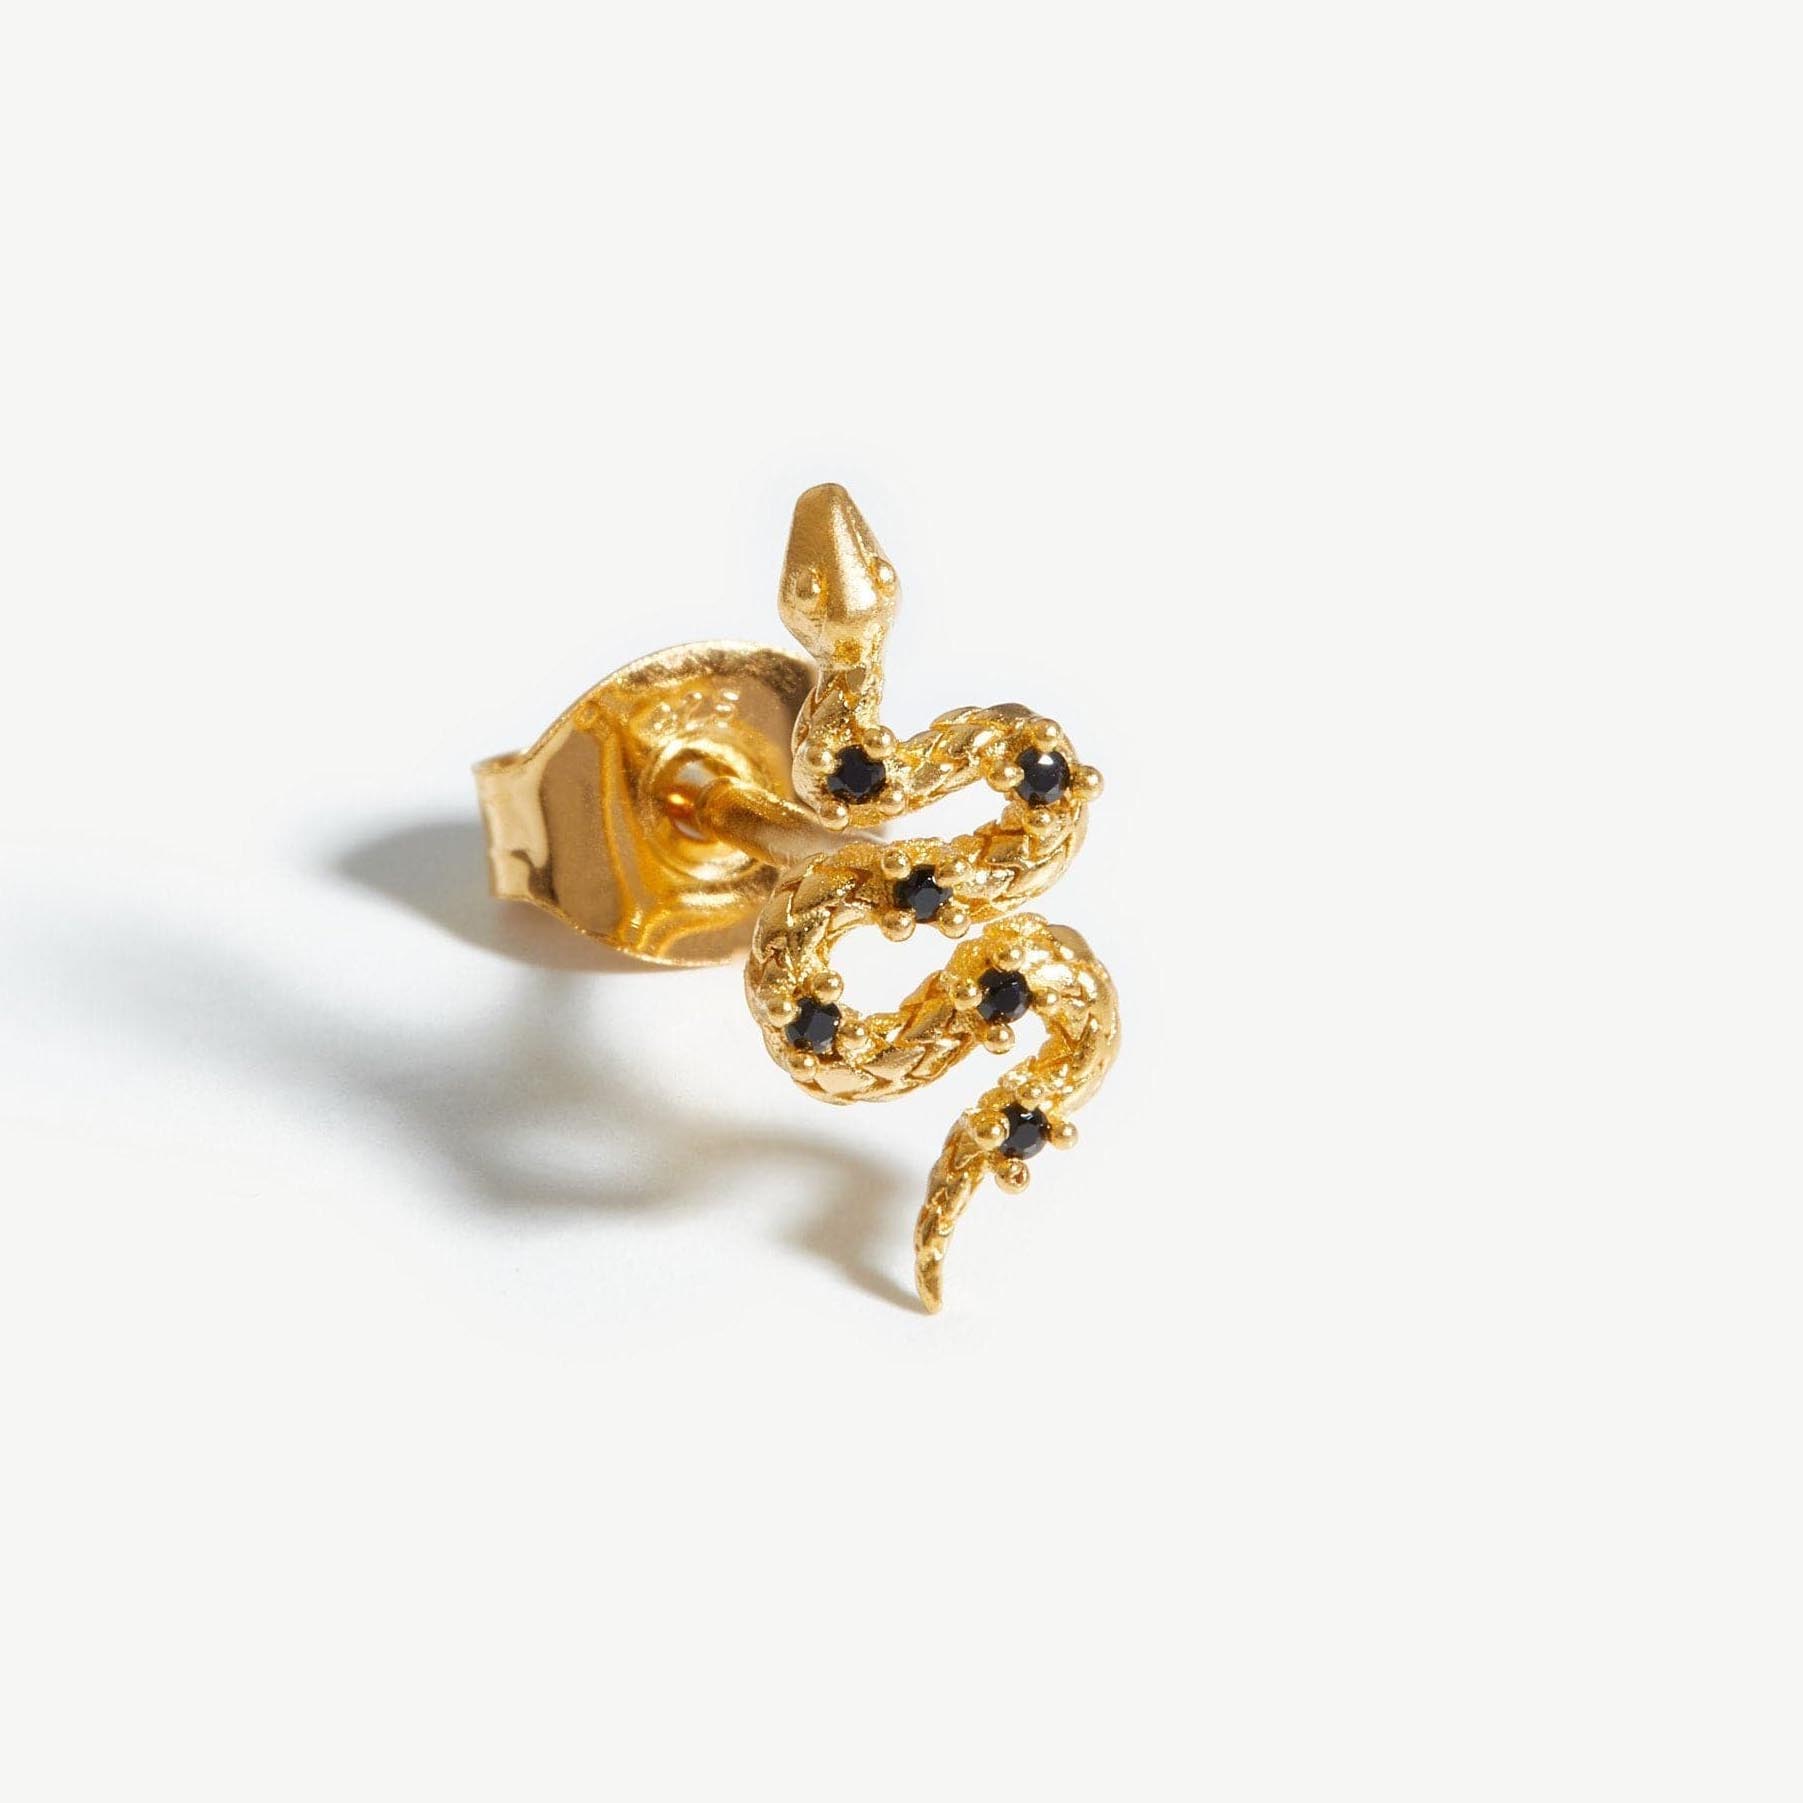 금도금 실버 주얼리 제조업체는 자신의 귀걸이 디자인을 제공합니다.